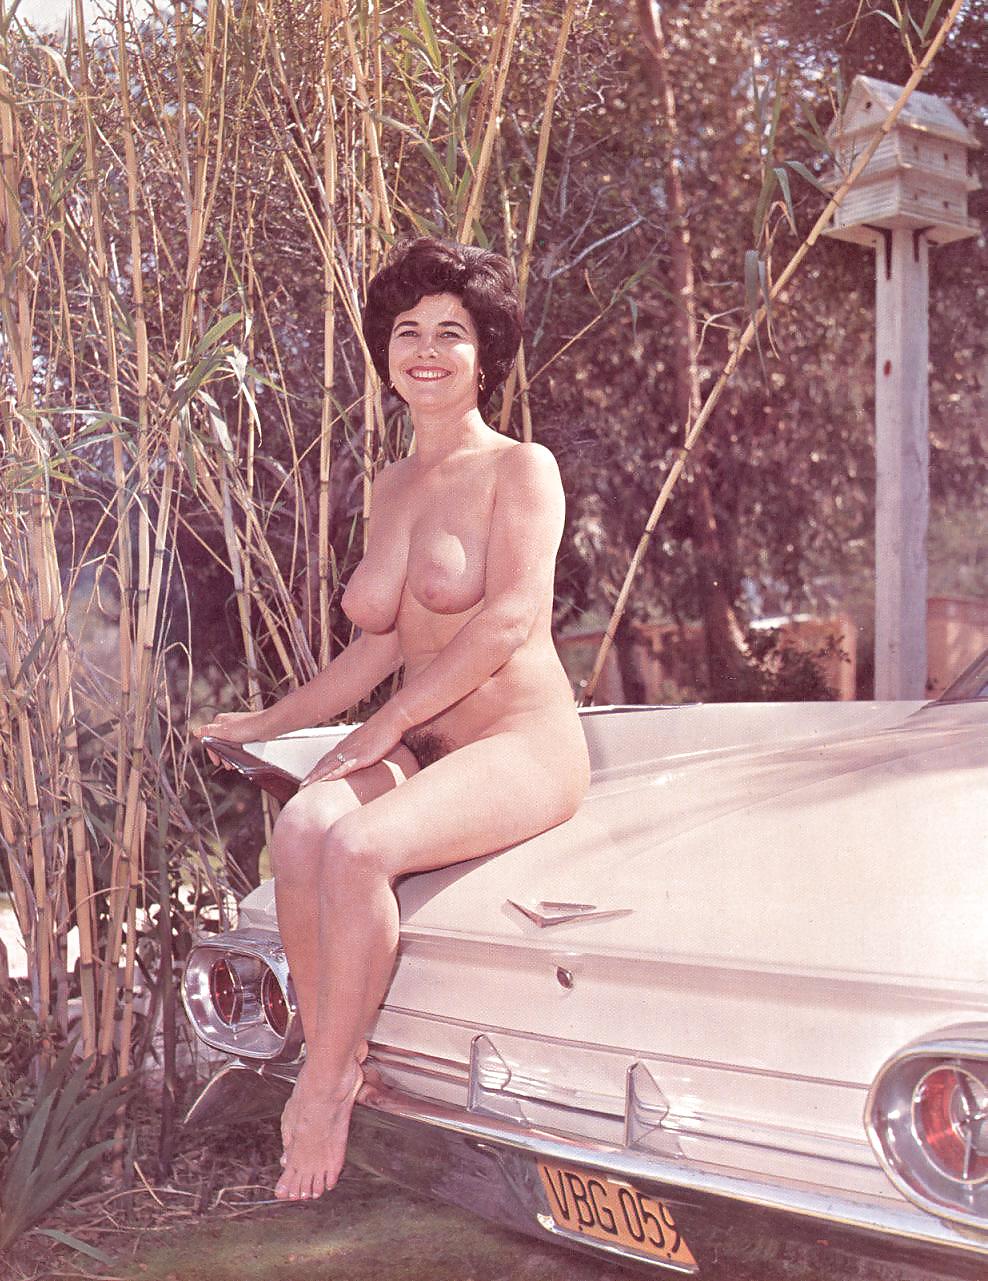 Nudo e senza vergogna - rivista nudista d'epoca
 #24241765